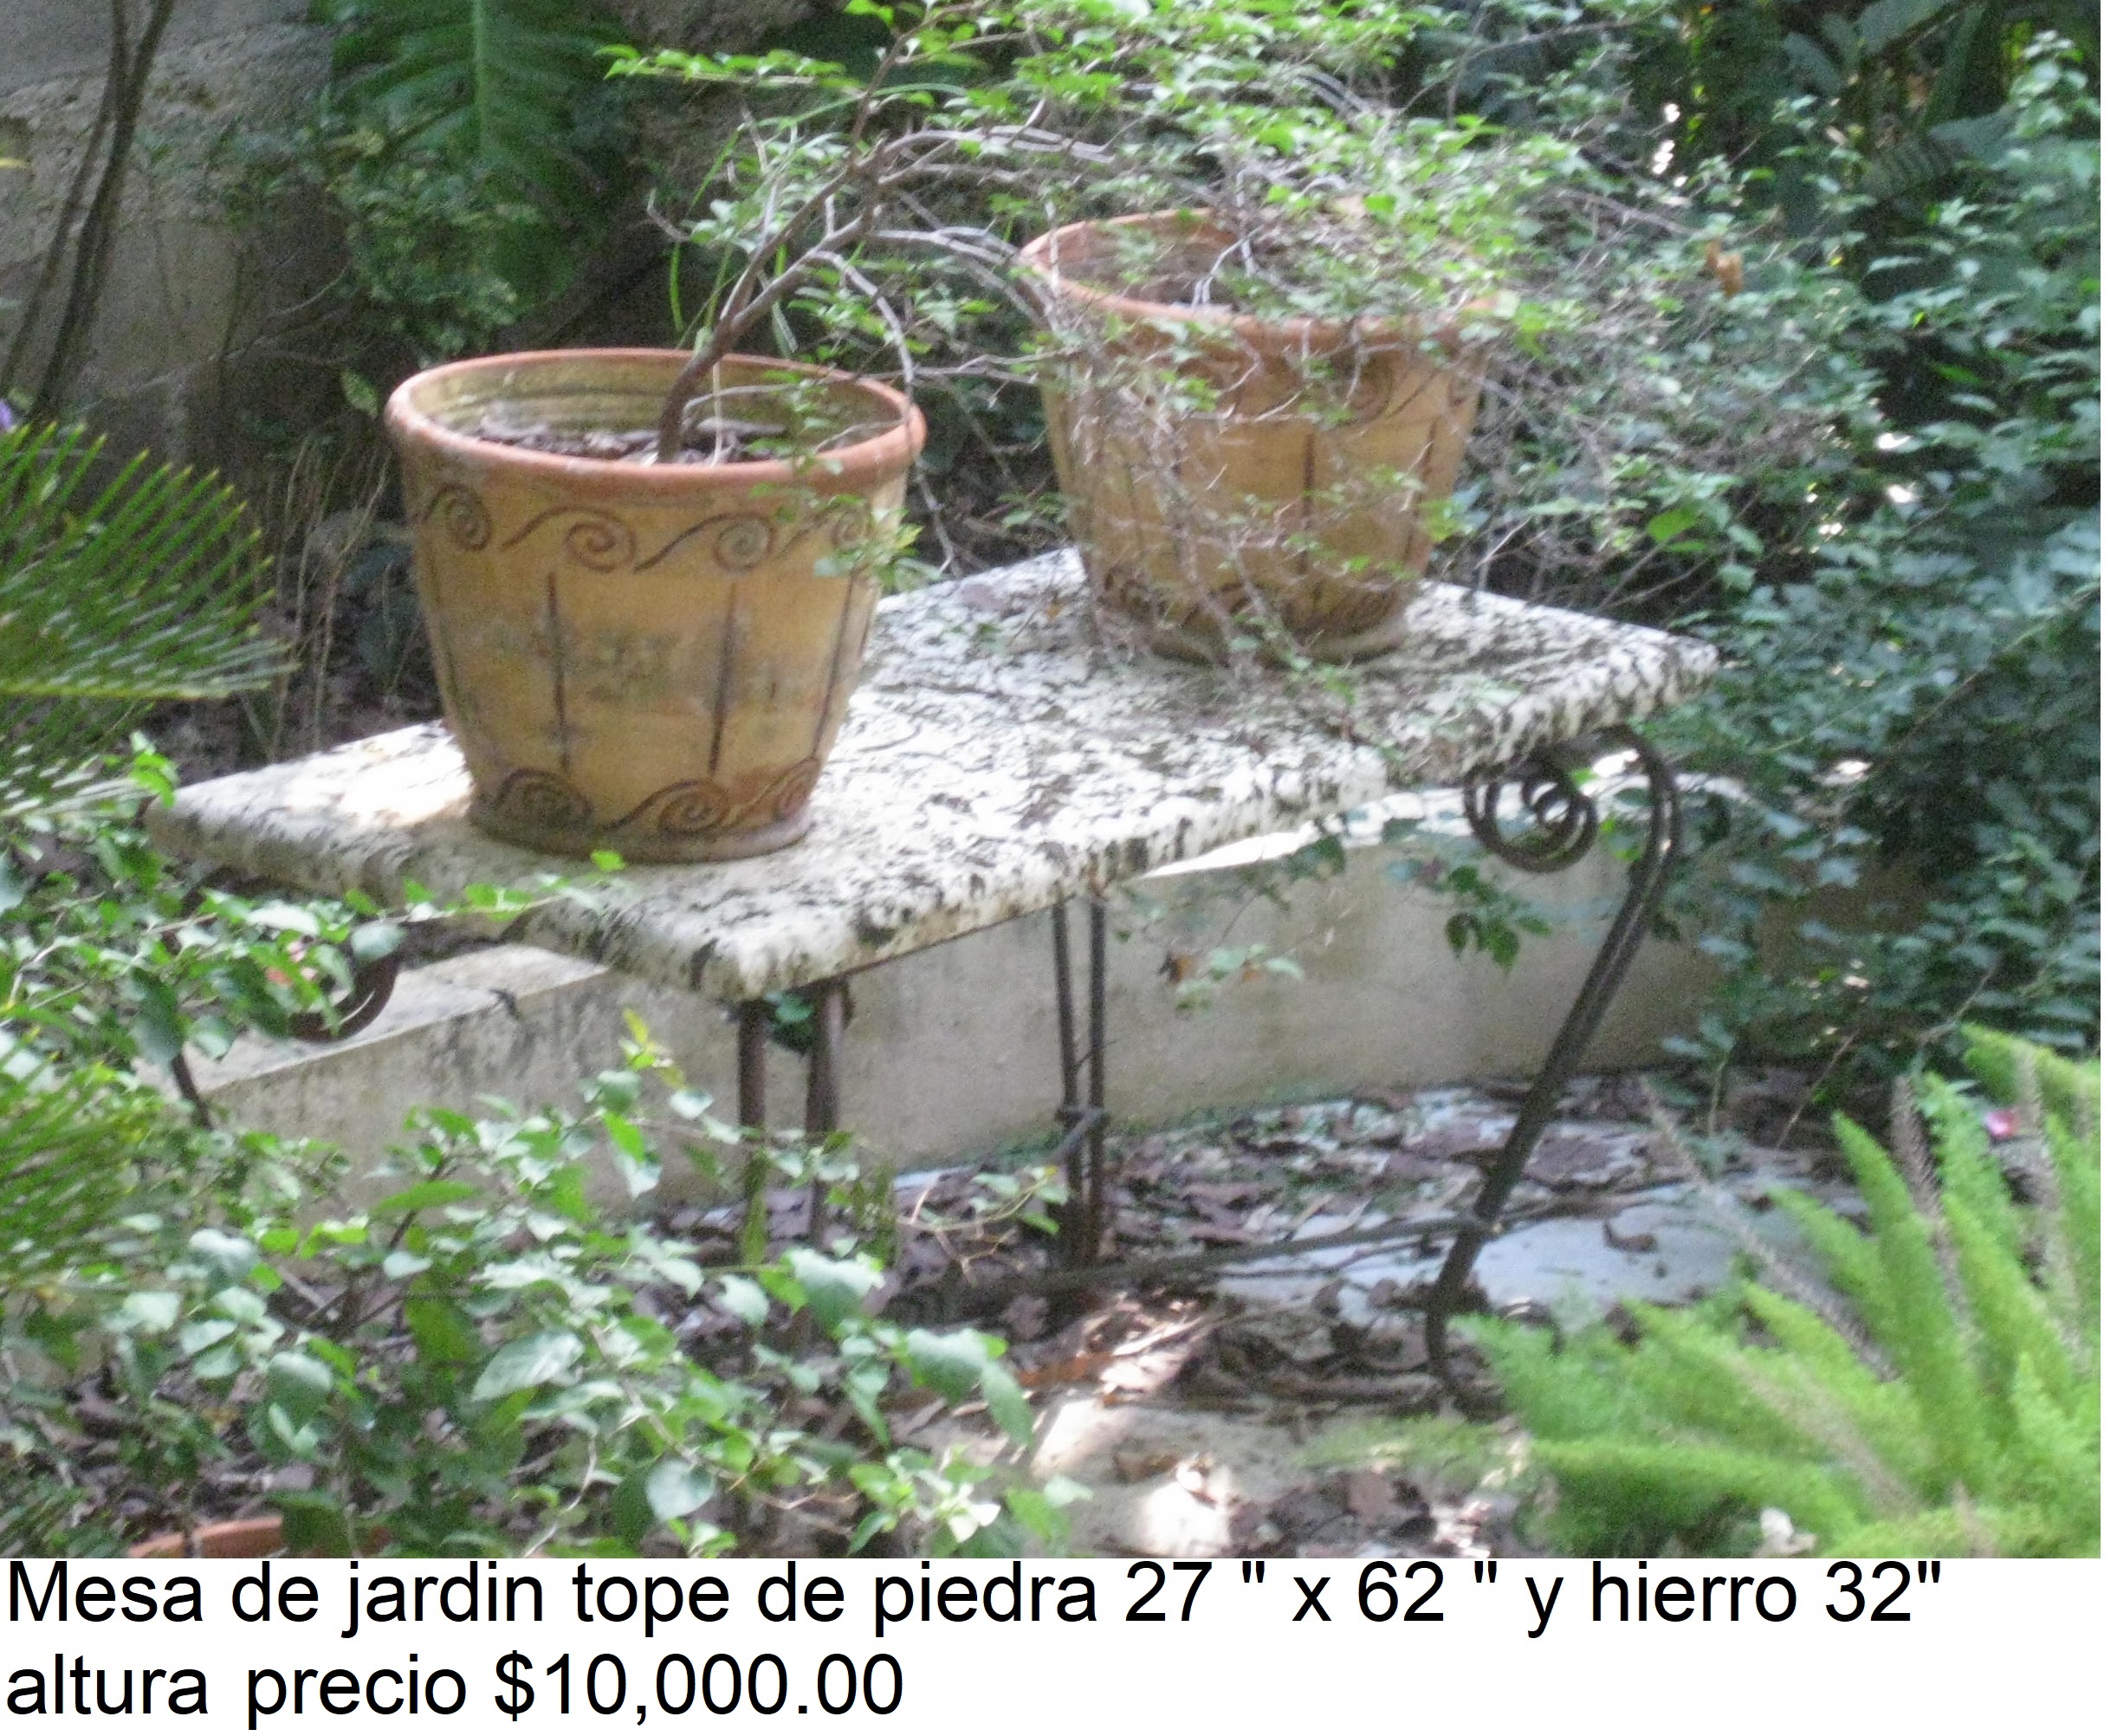 herramientas, jardines y exterior - Excelente mesa para jardín con tope de piedra y base hierro